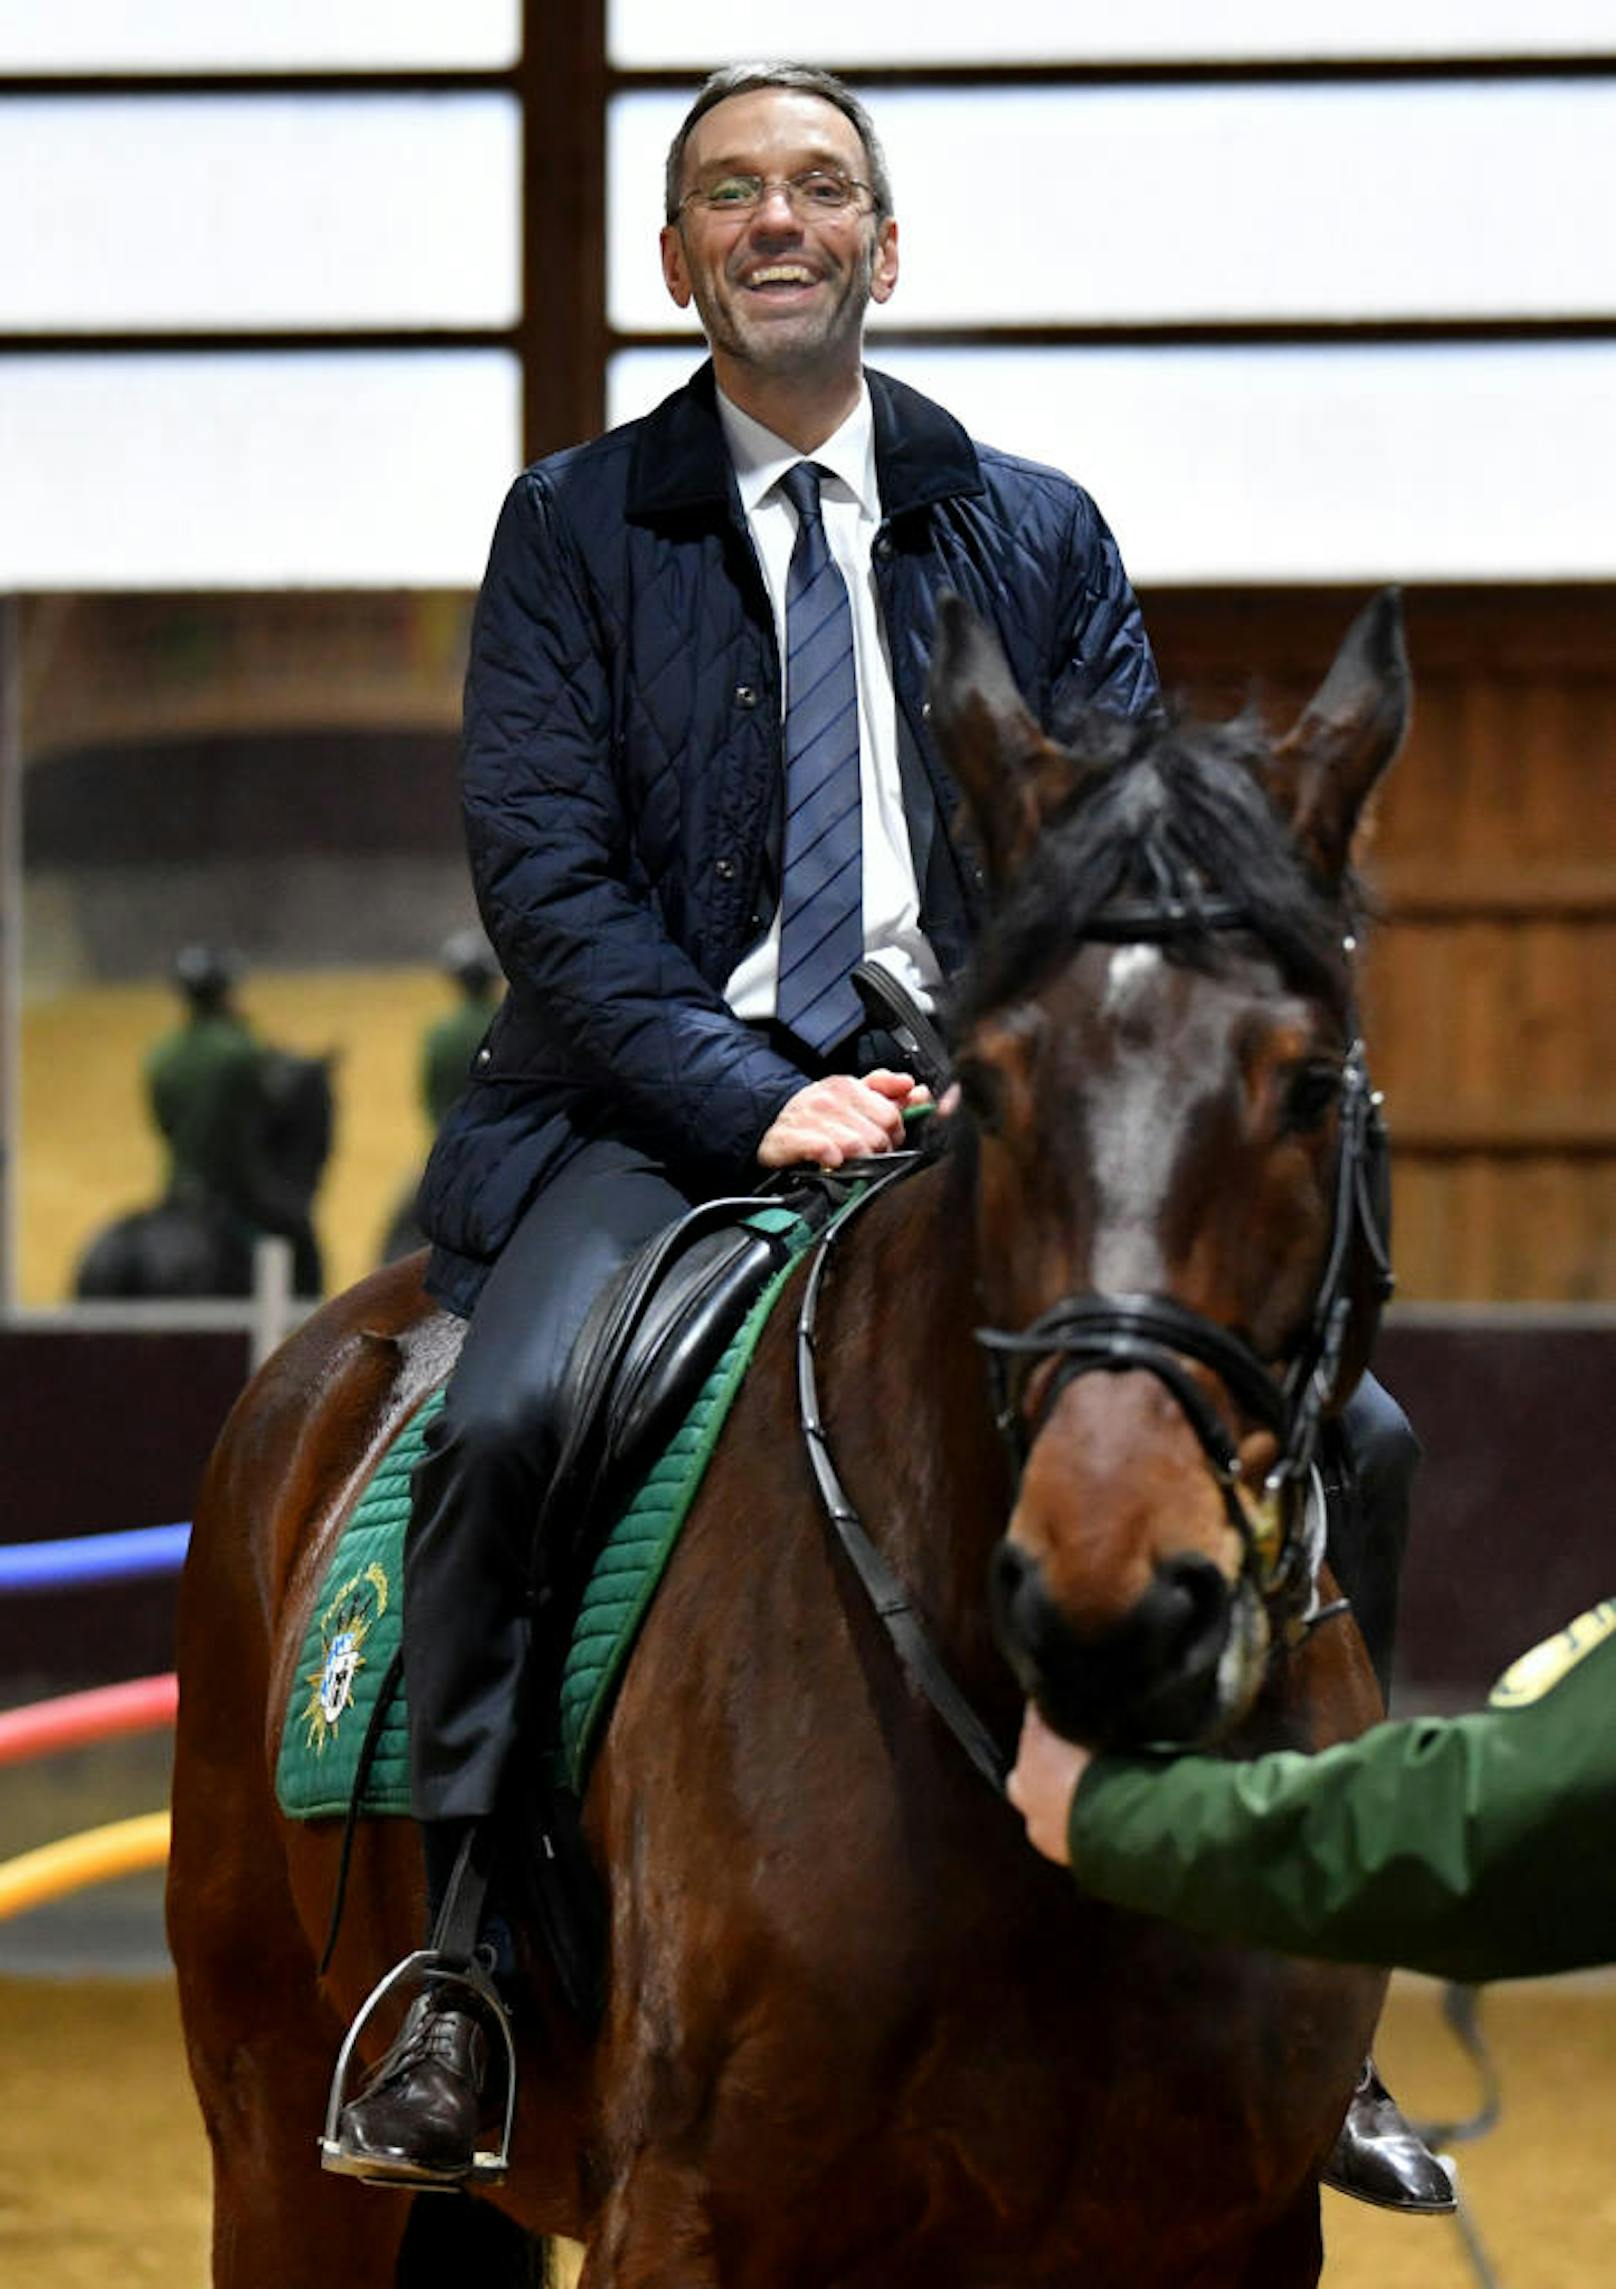 Auch der österreichische Ex-Innenminister Herbert Kickl (FPÖ) fand sein Glück auf dem Rücken eines Pferdes. Sein großes Prestigeprojekt war eine Polizei-Pferdestaffel.